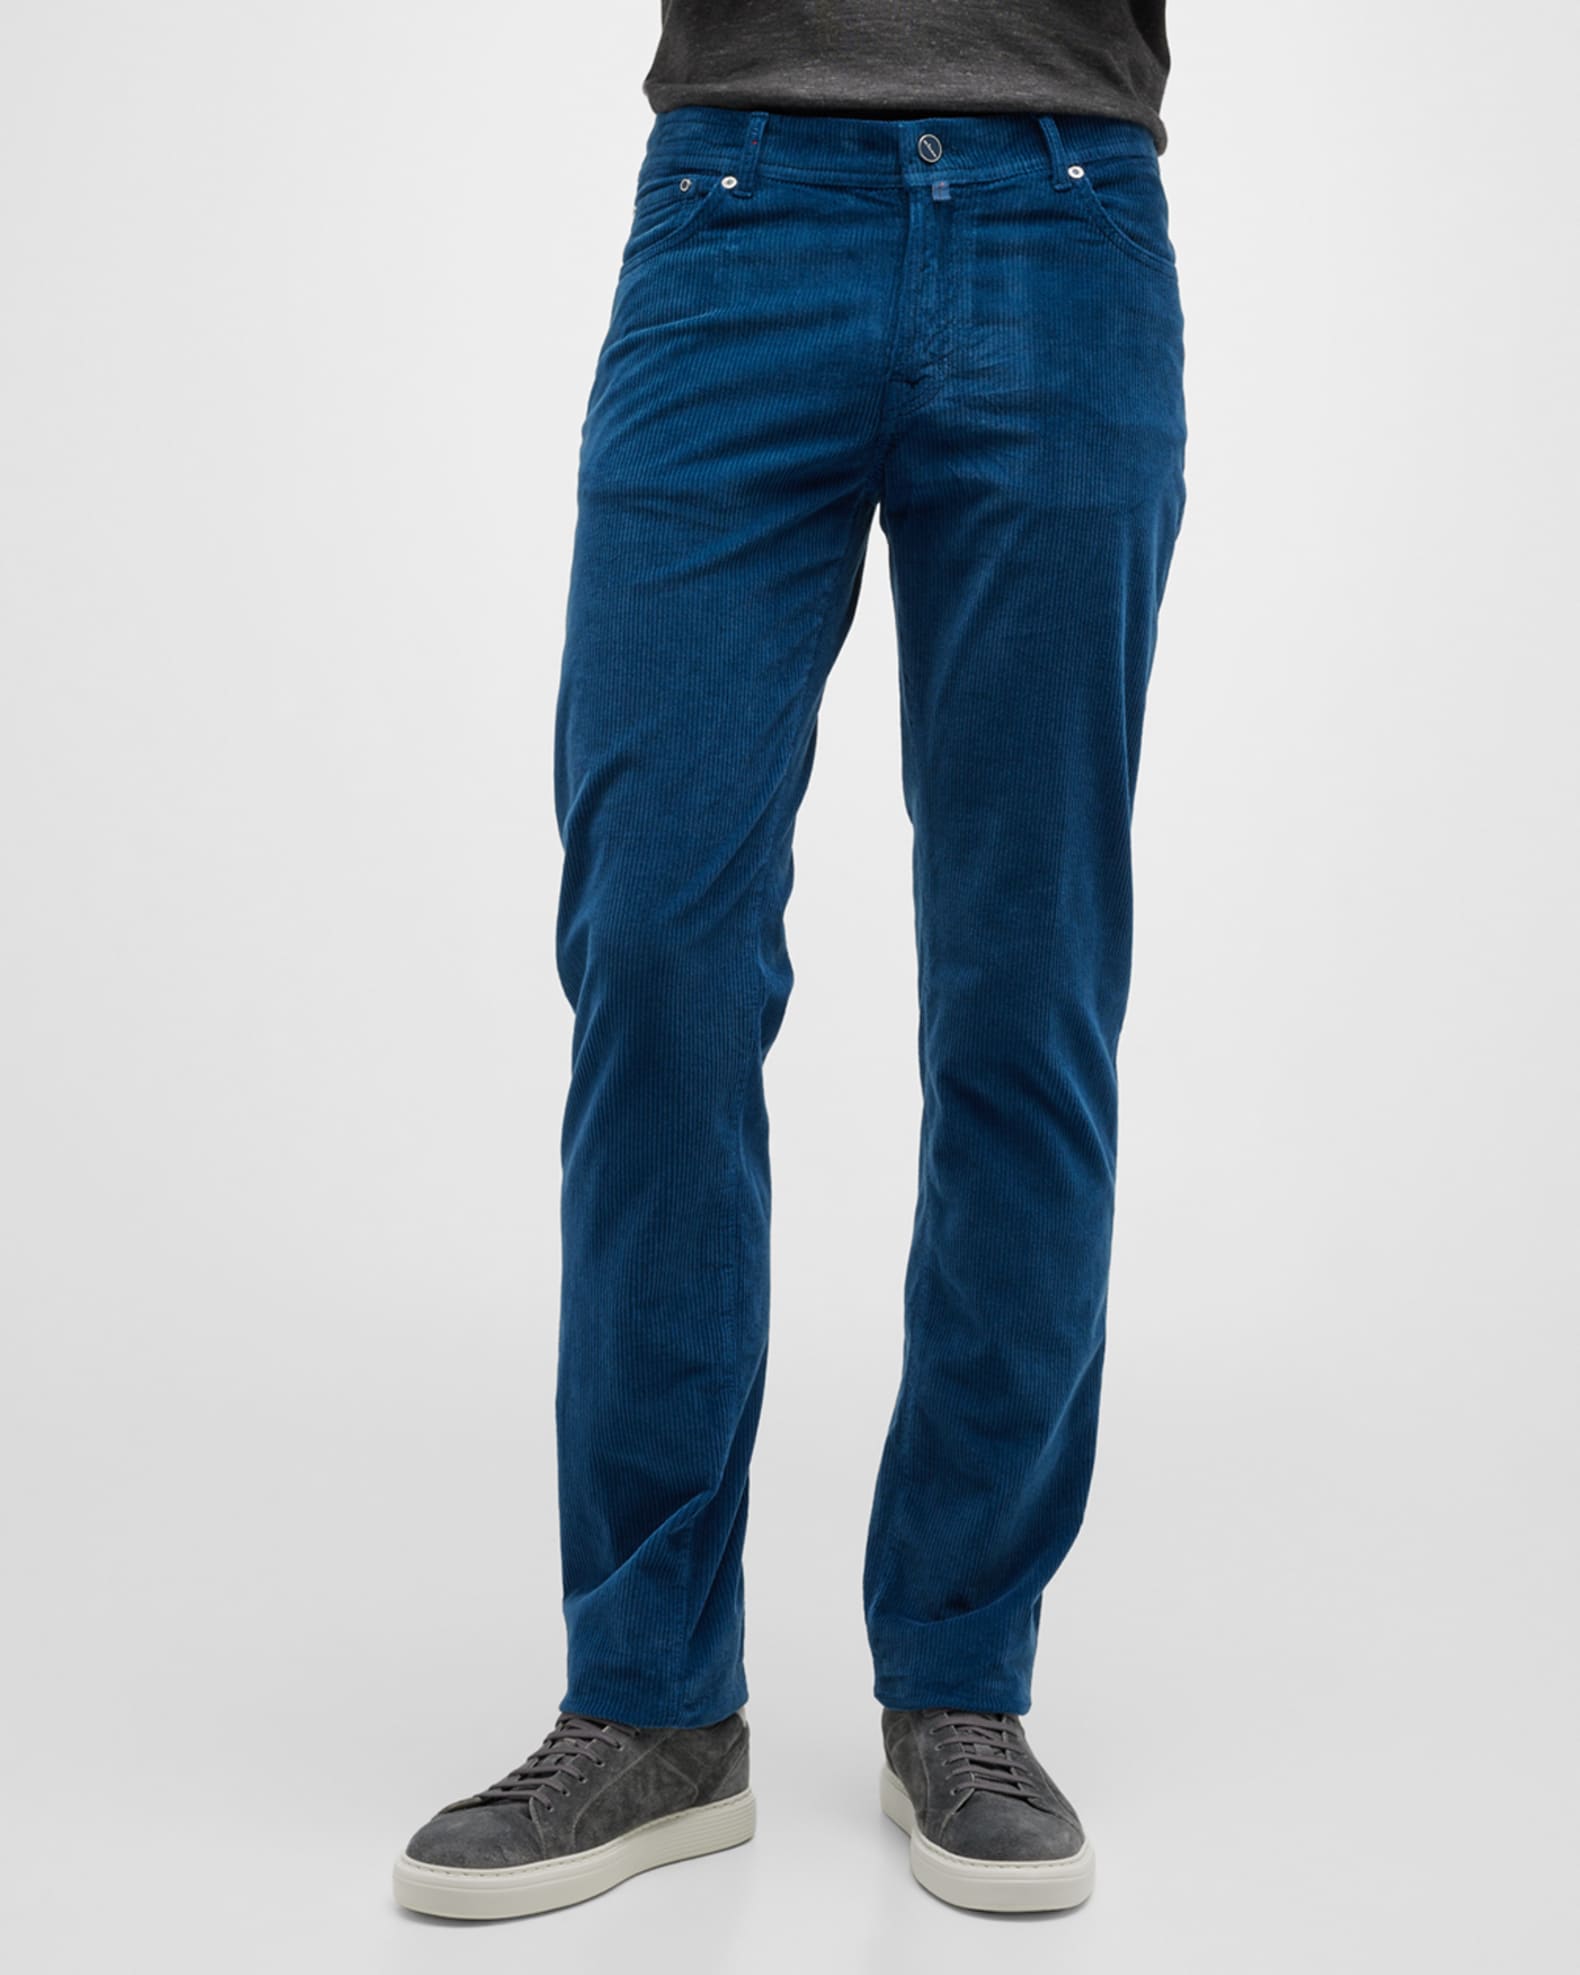 Kiton Men's Corduroy 5-Pocket Pants | Neiman Marcus